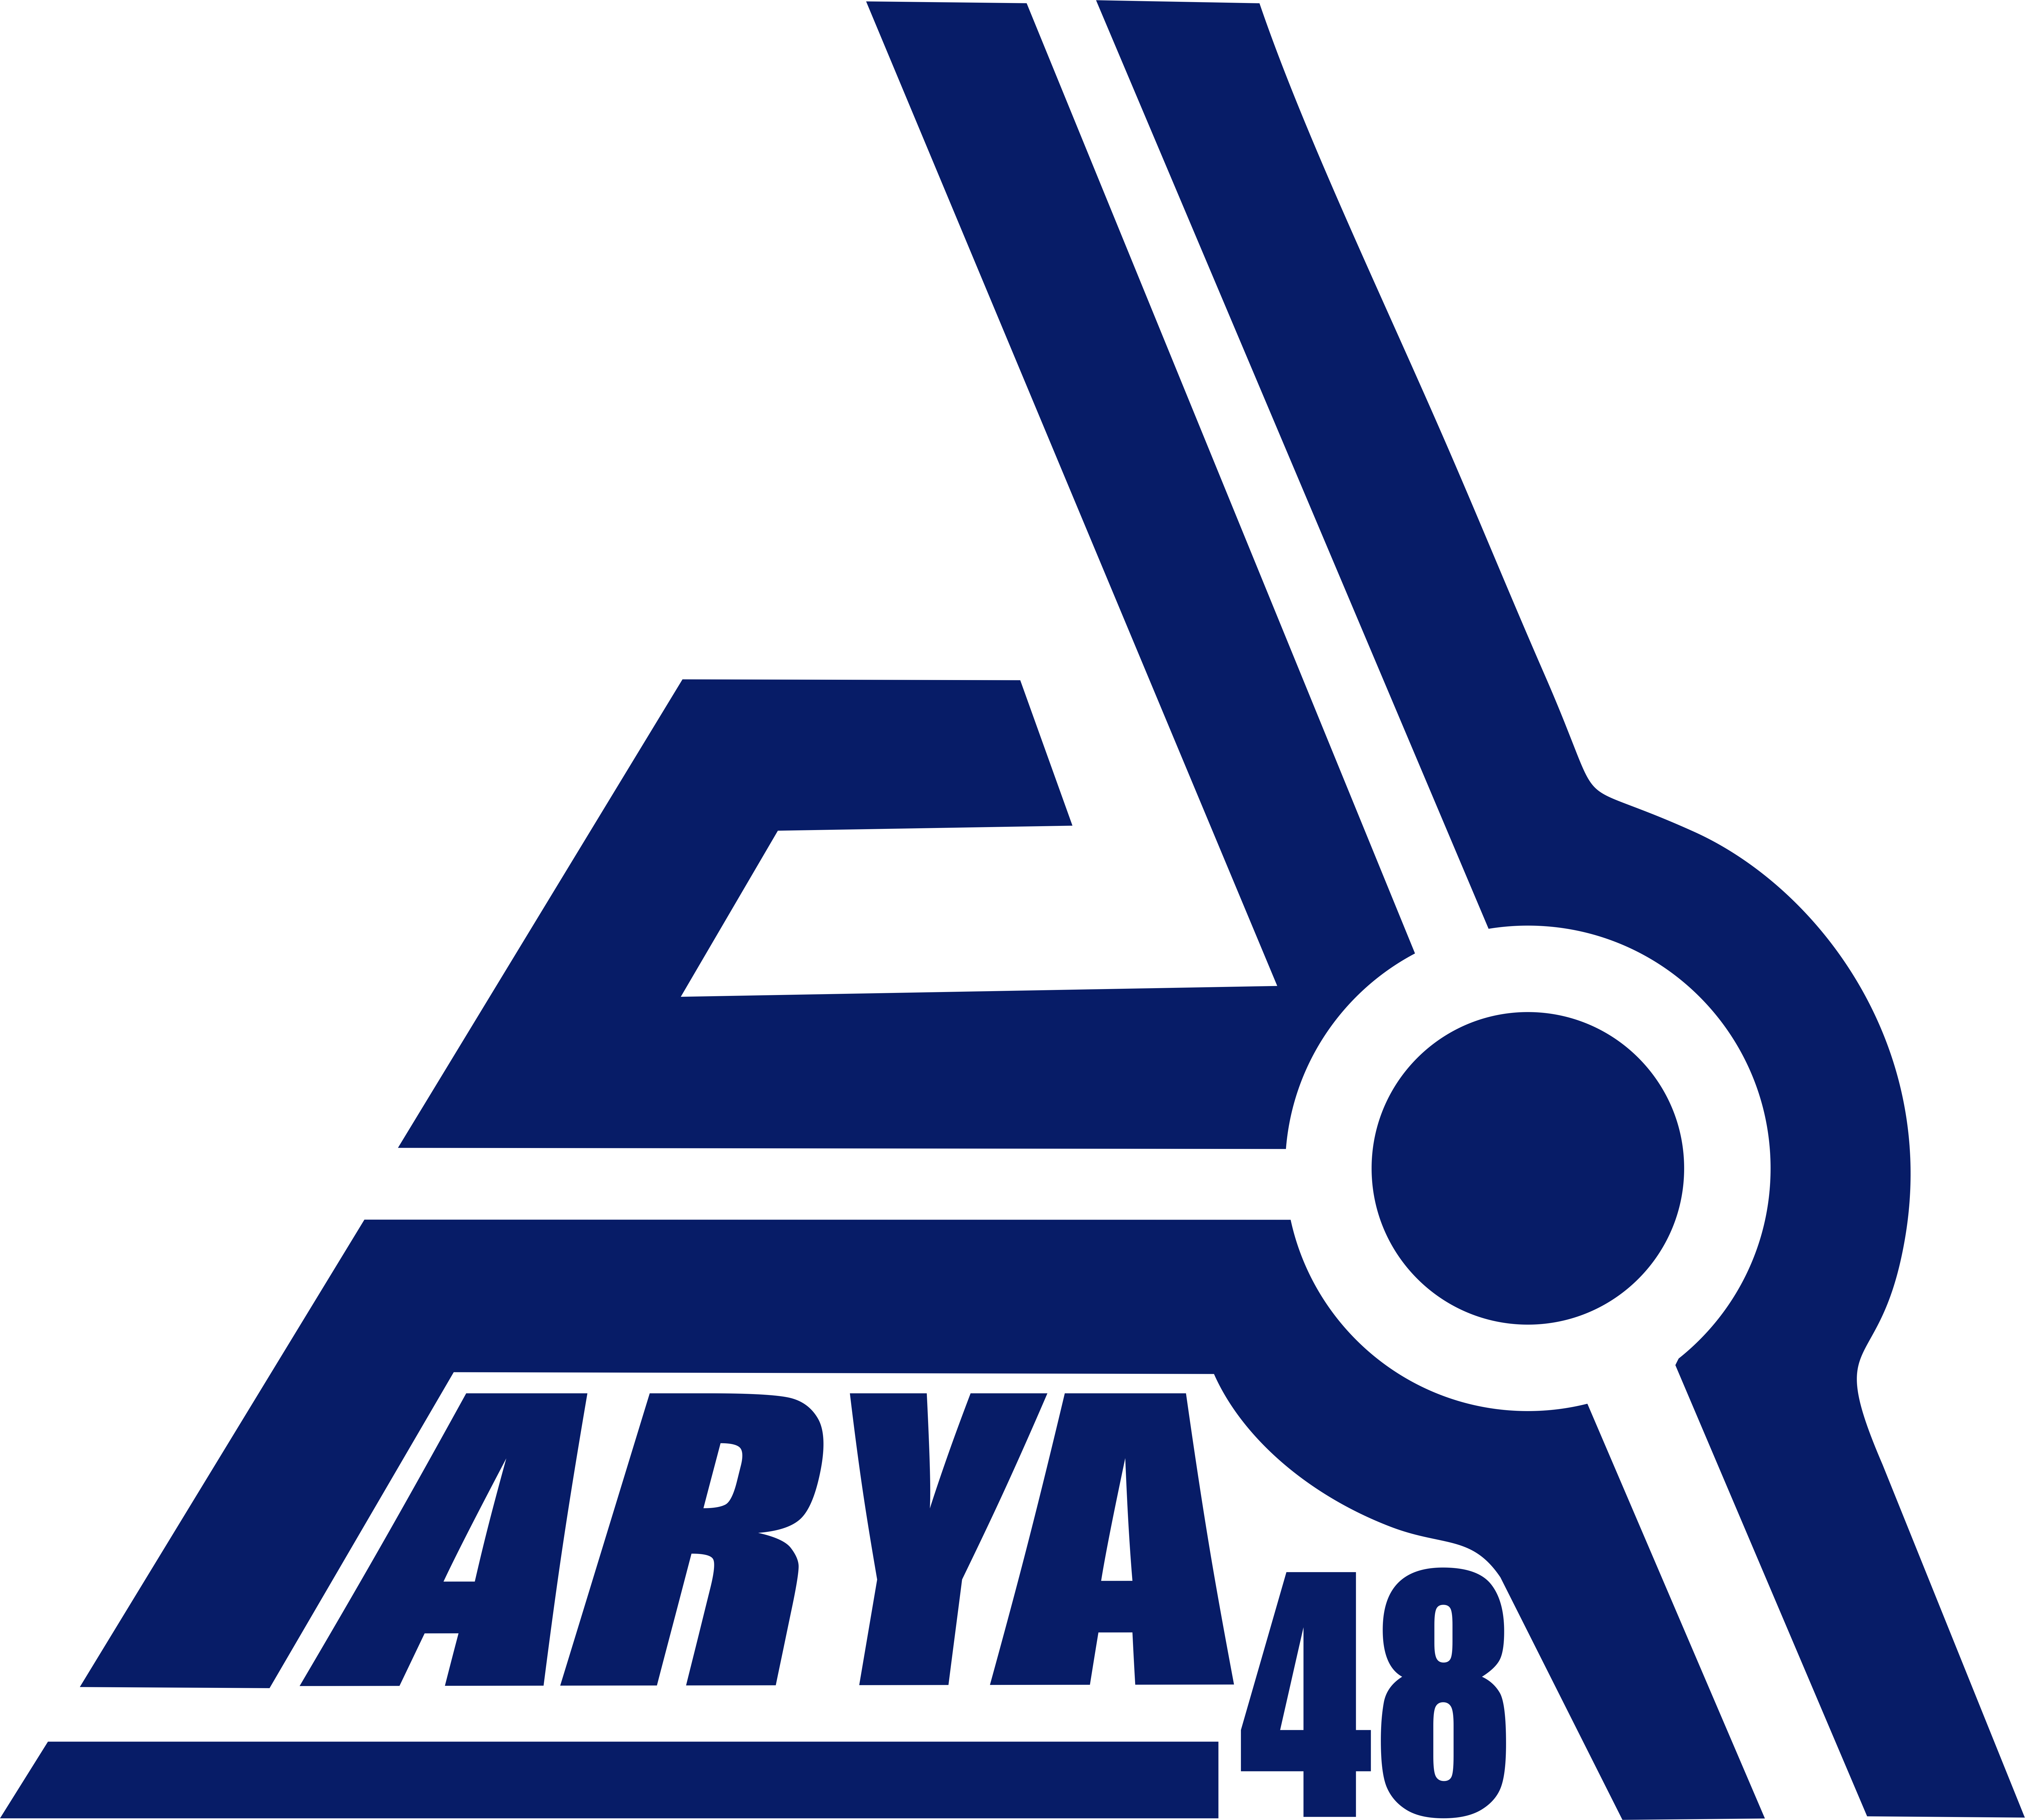 Arya48 call center